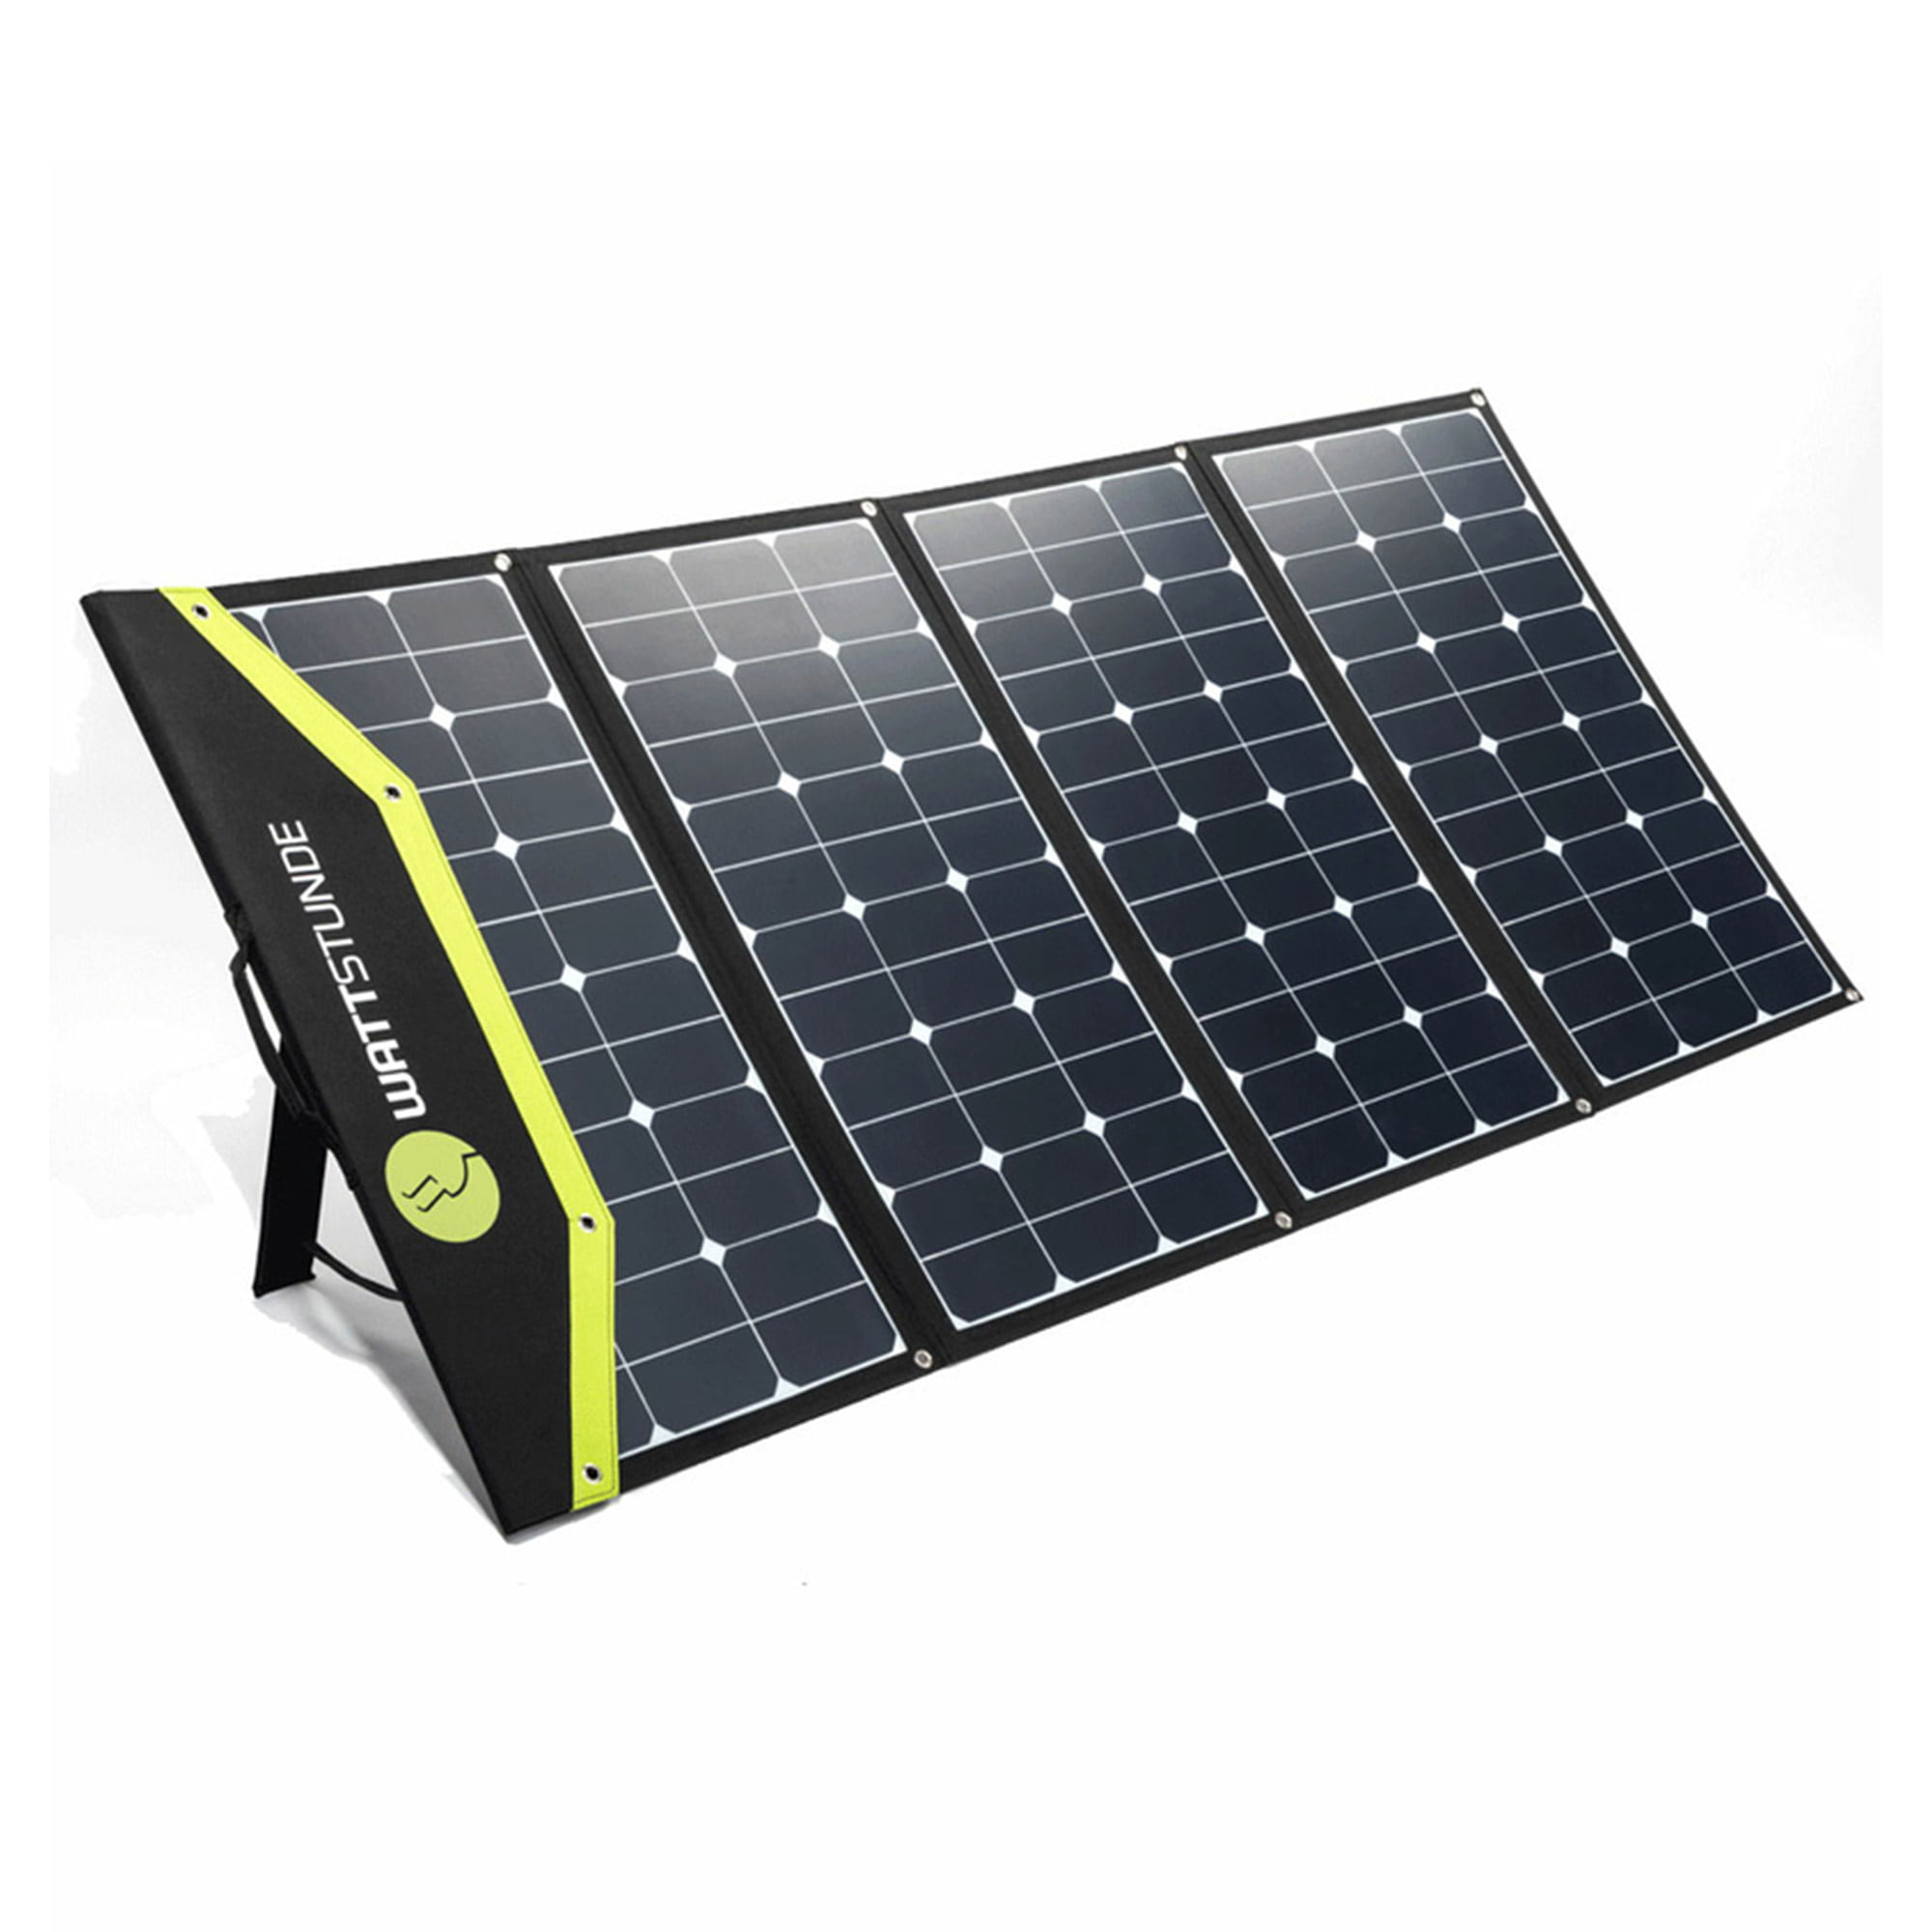 WATTSTUNDE WS340SF SunFolder+ 340Wp Solartasche REFURBISHED, WATTSTUNDE, Brands